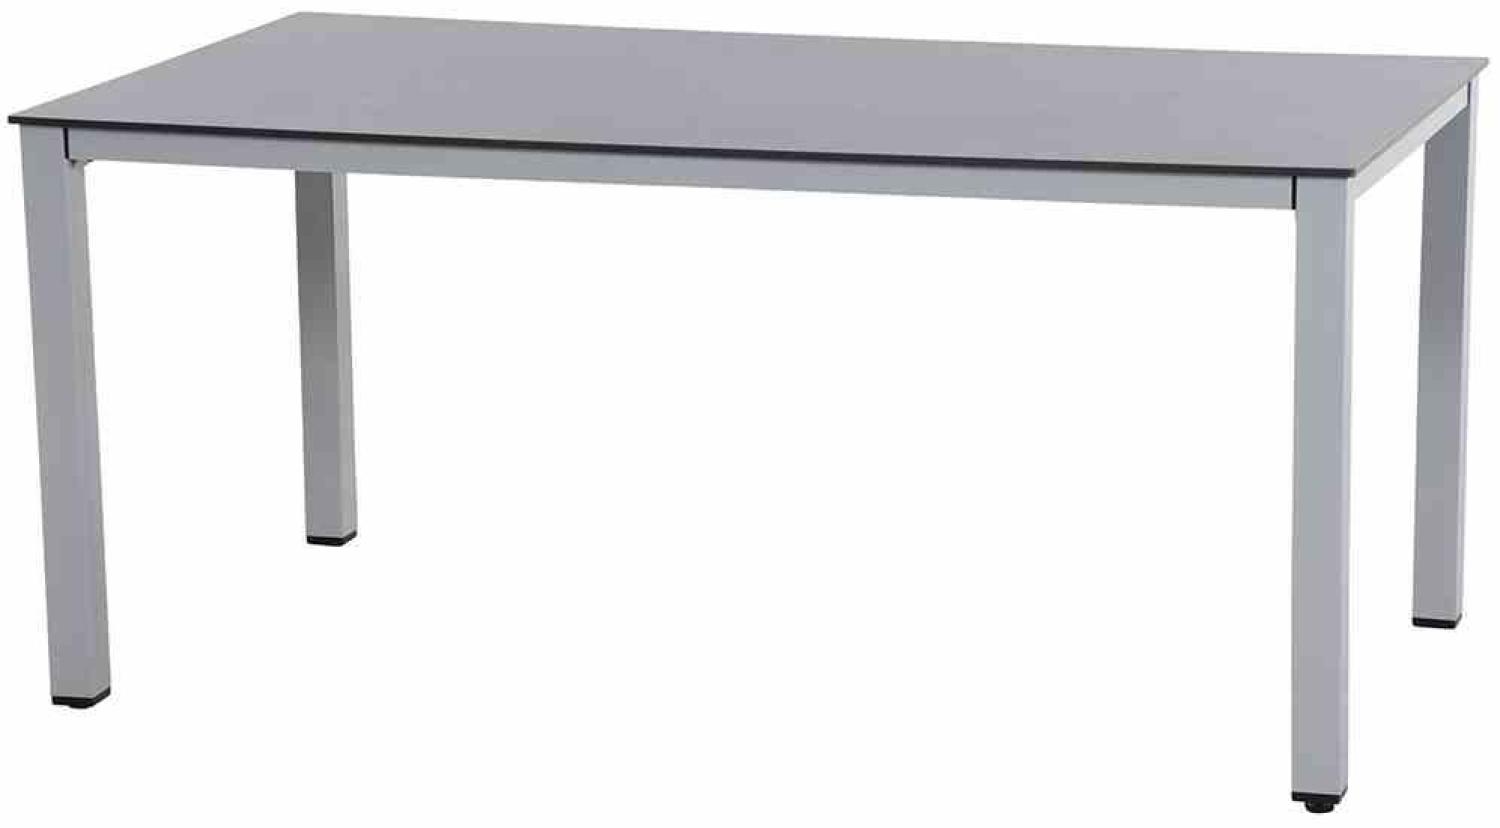 SIENA GARDEN Sola Dining Tisch 160x90 cm, silber Gestell Aluminium silber, Tischplatte HPL dark stone Bild 1